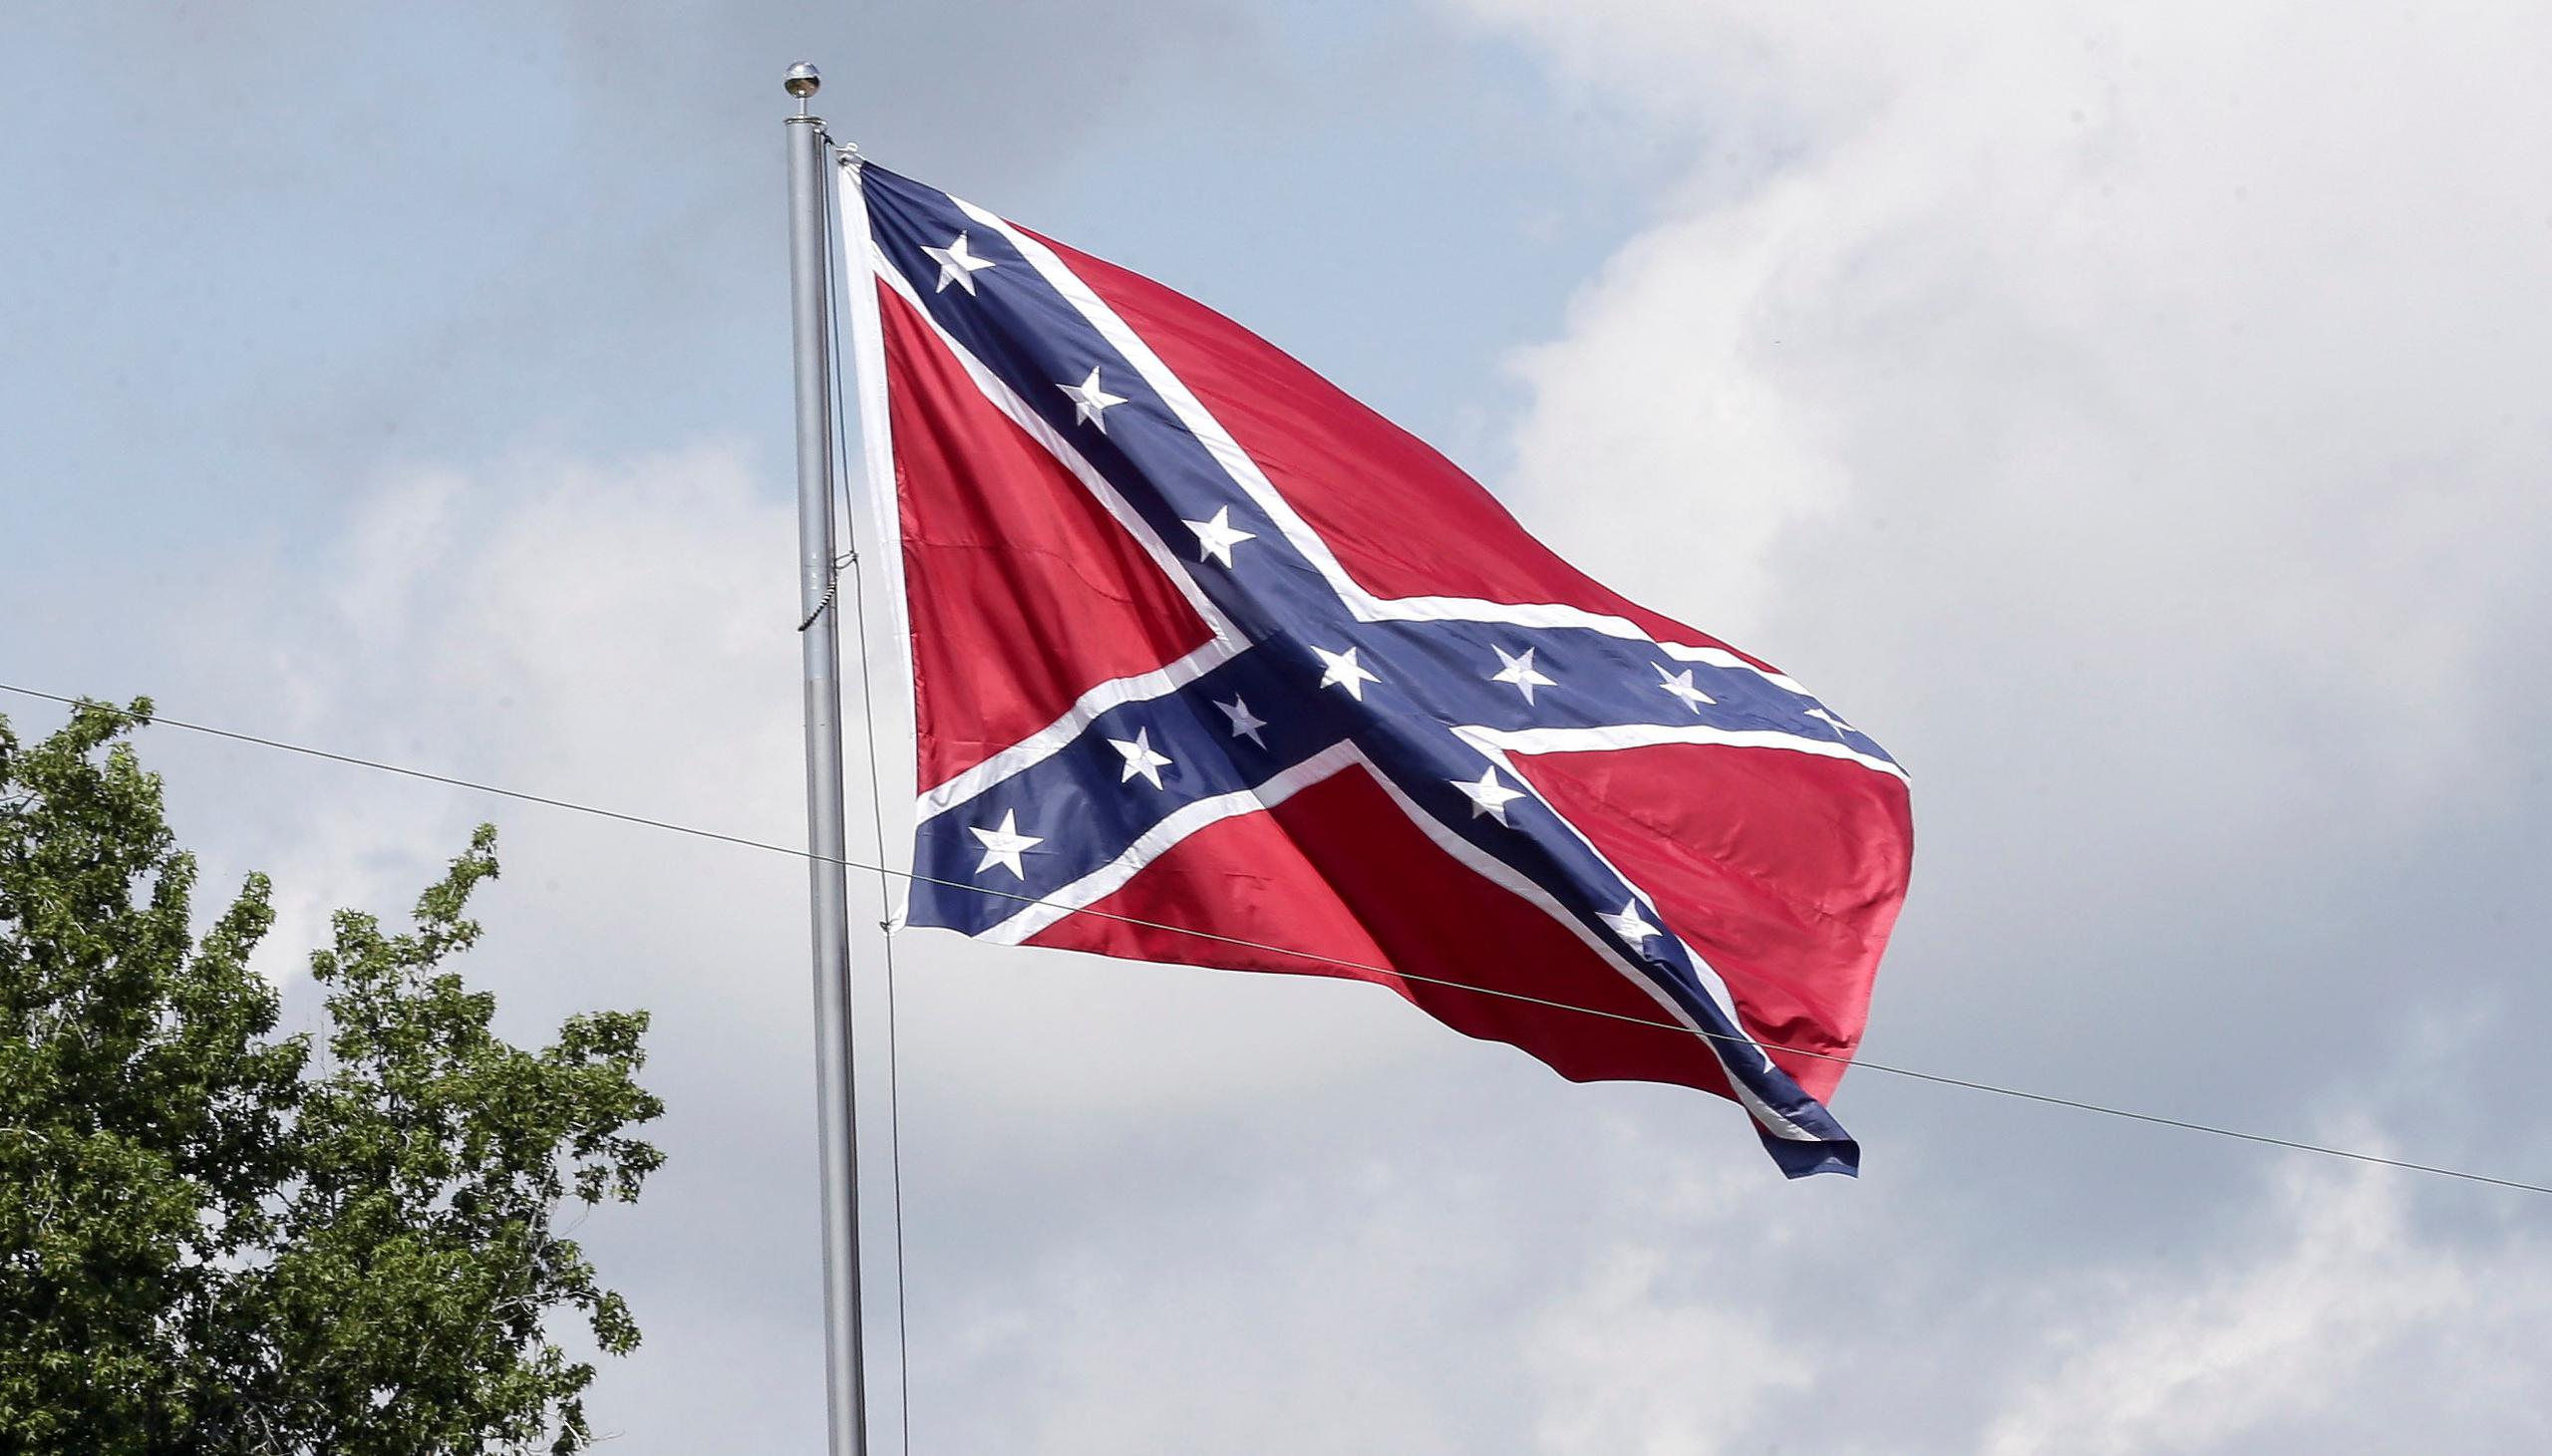 Las banderas y monumentos de la Confederación y los nombres confederados de bases militares se han vuelto un foco de tensiones desde la muerte de George Floyd.